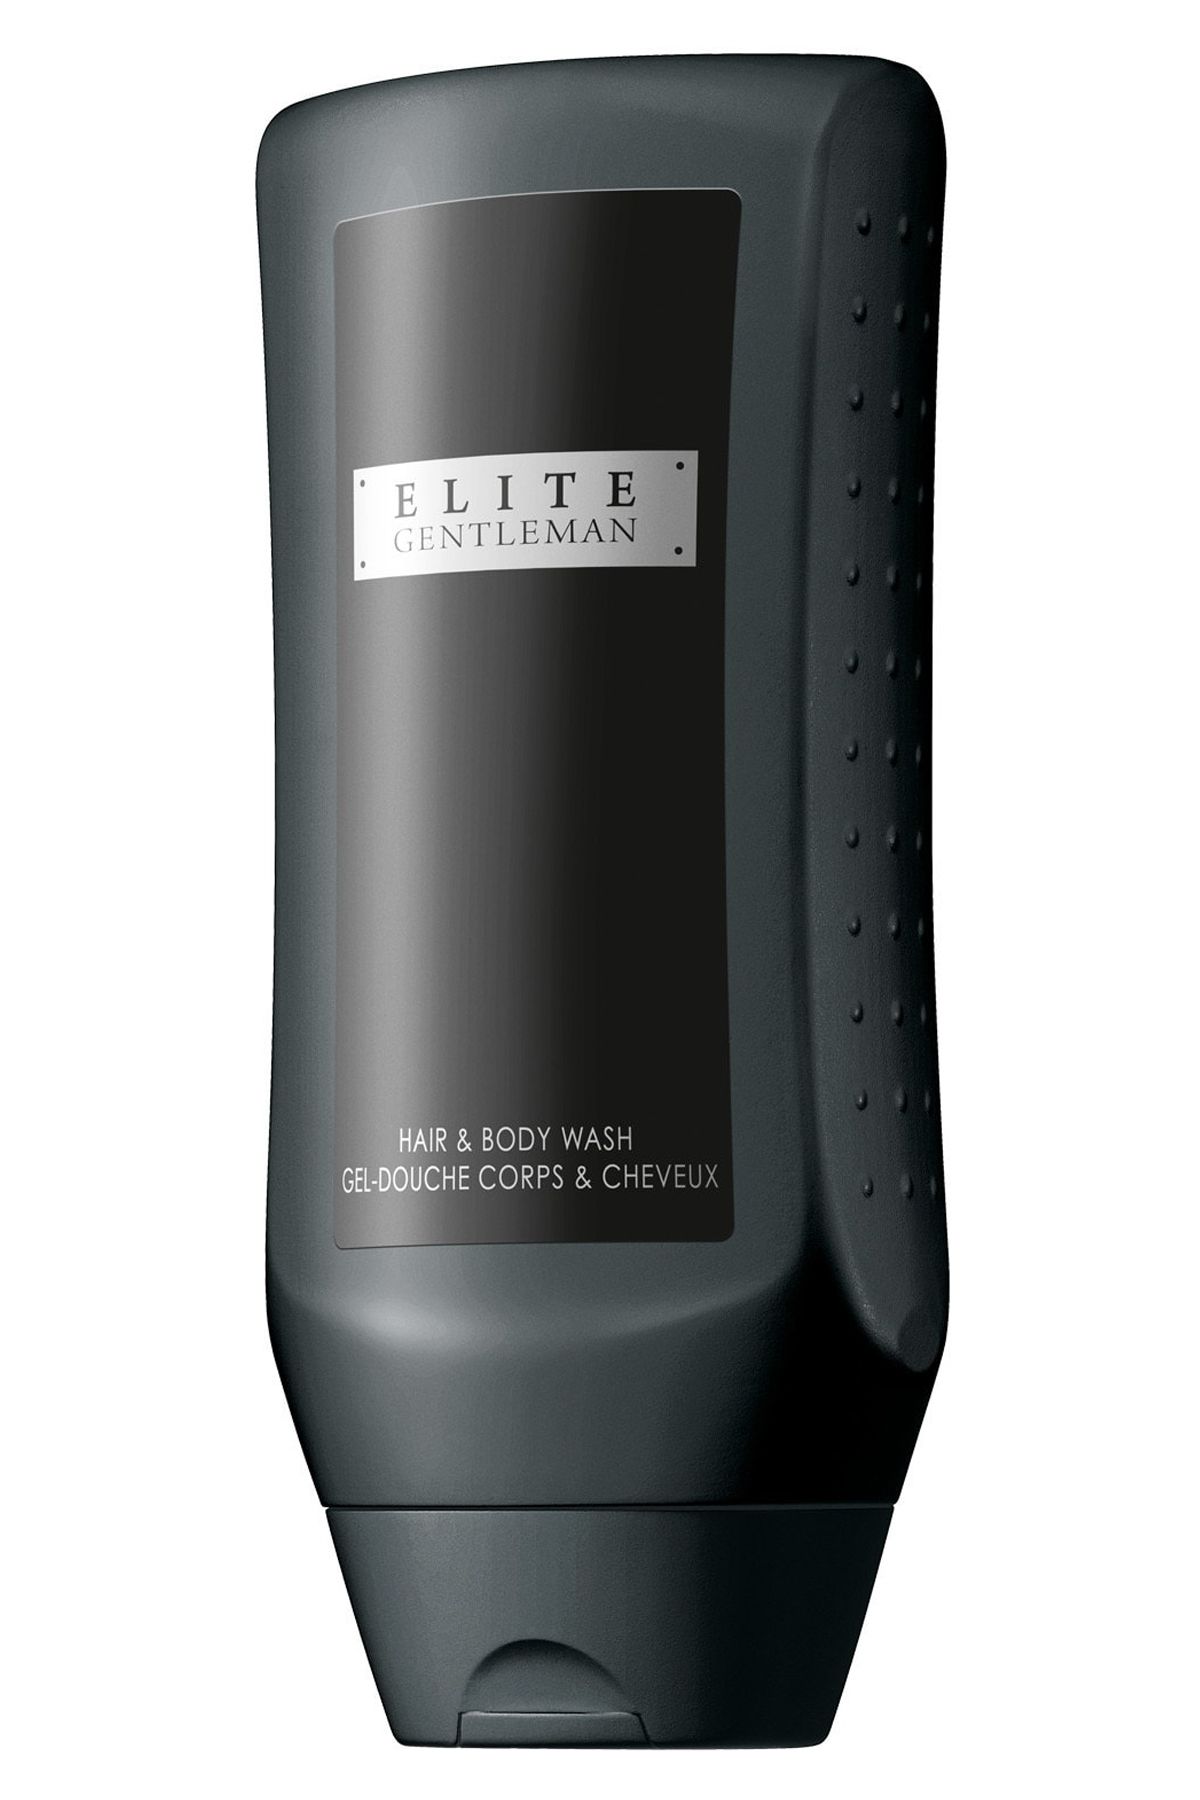 Avon Elite Gentleman Saç Ve Vücut Şampuanı 250 Ml.